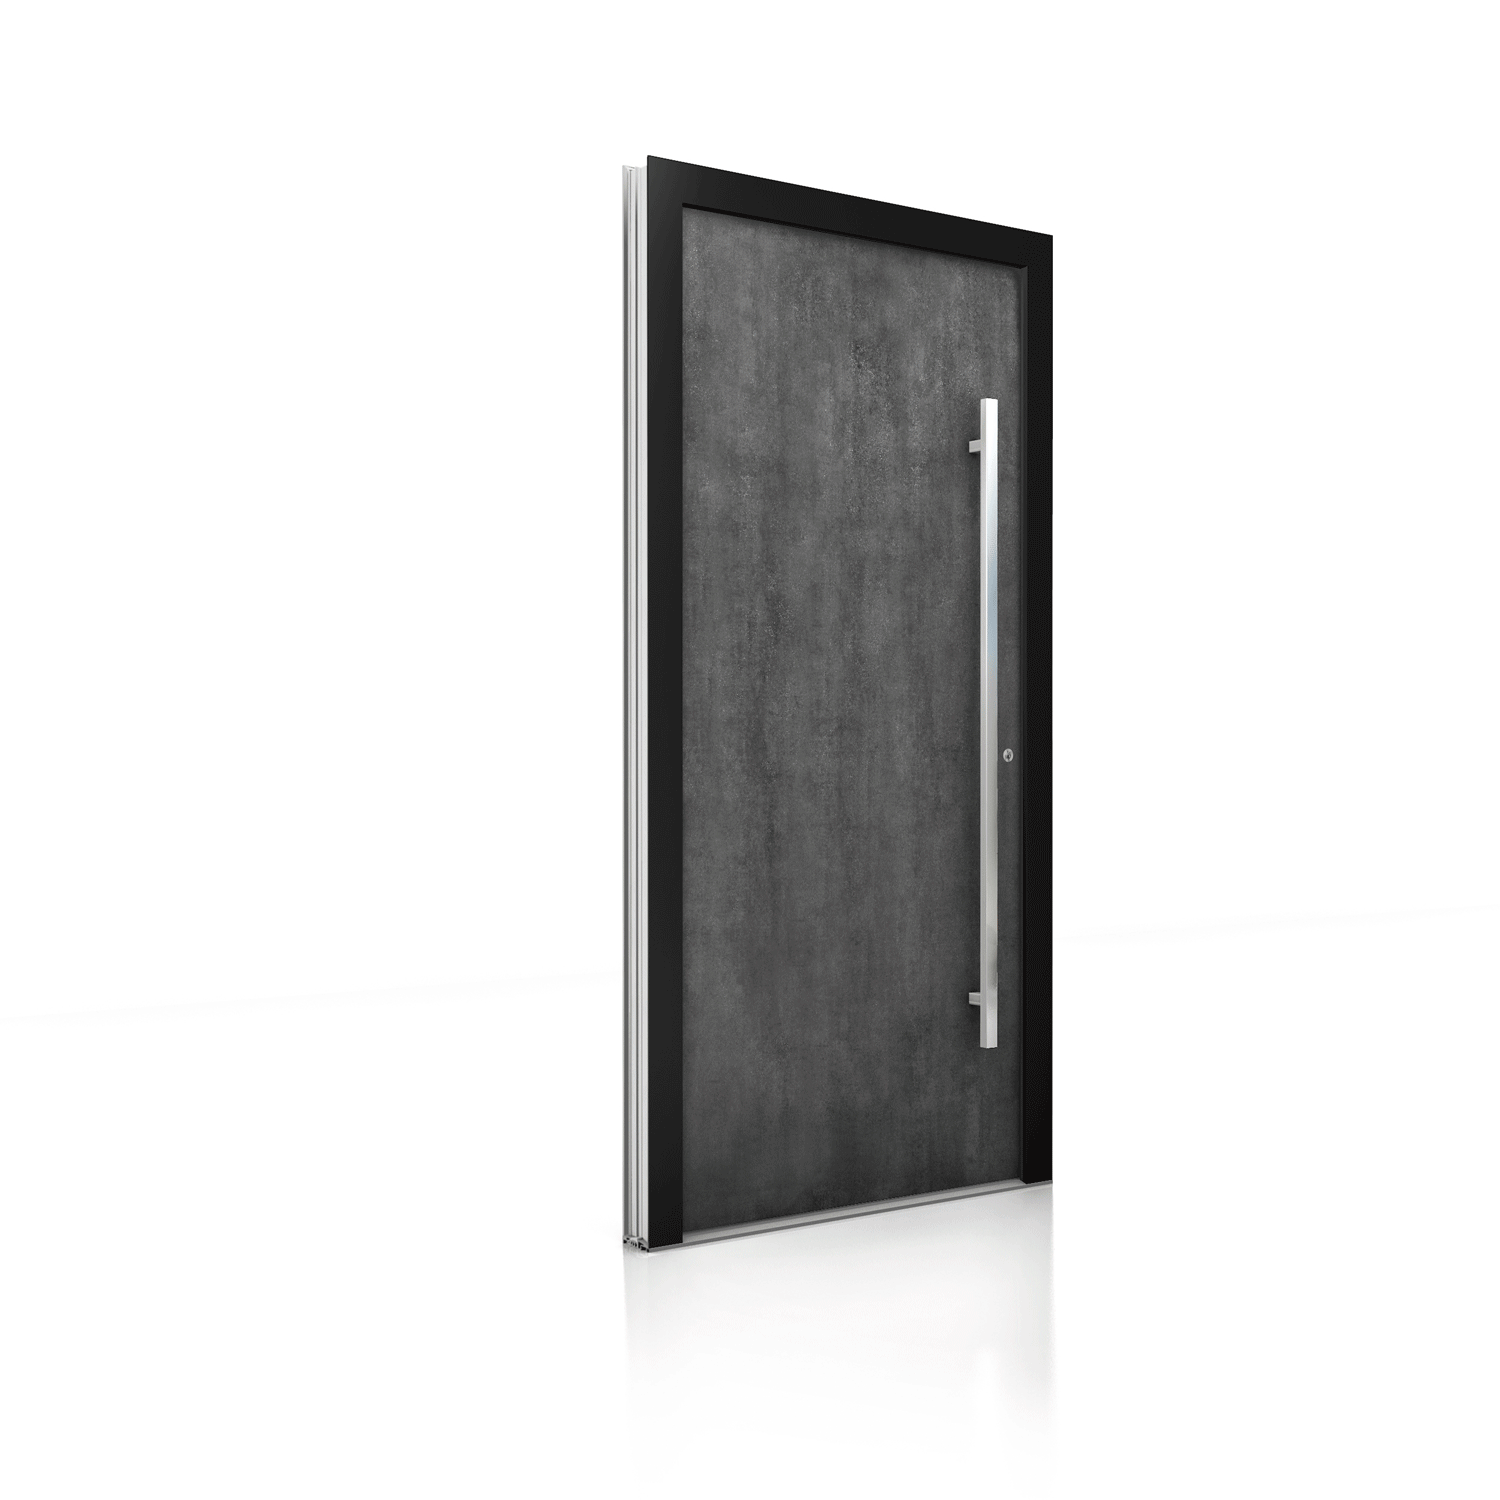 Internorm hliníkové vchodové dvere s rôznymi povrchovými úpravami  podľa Vášho výberu - imitácia hrdze, ocele, dreva, betónu.....